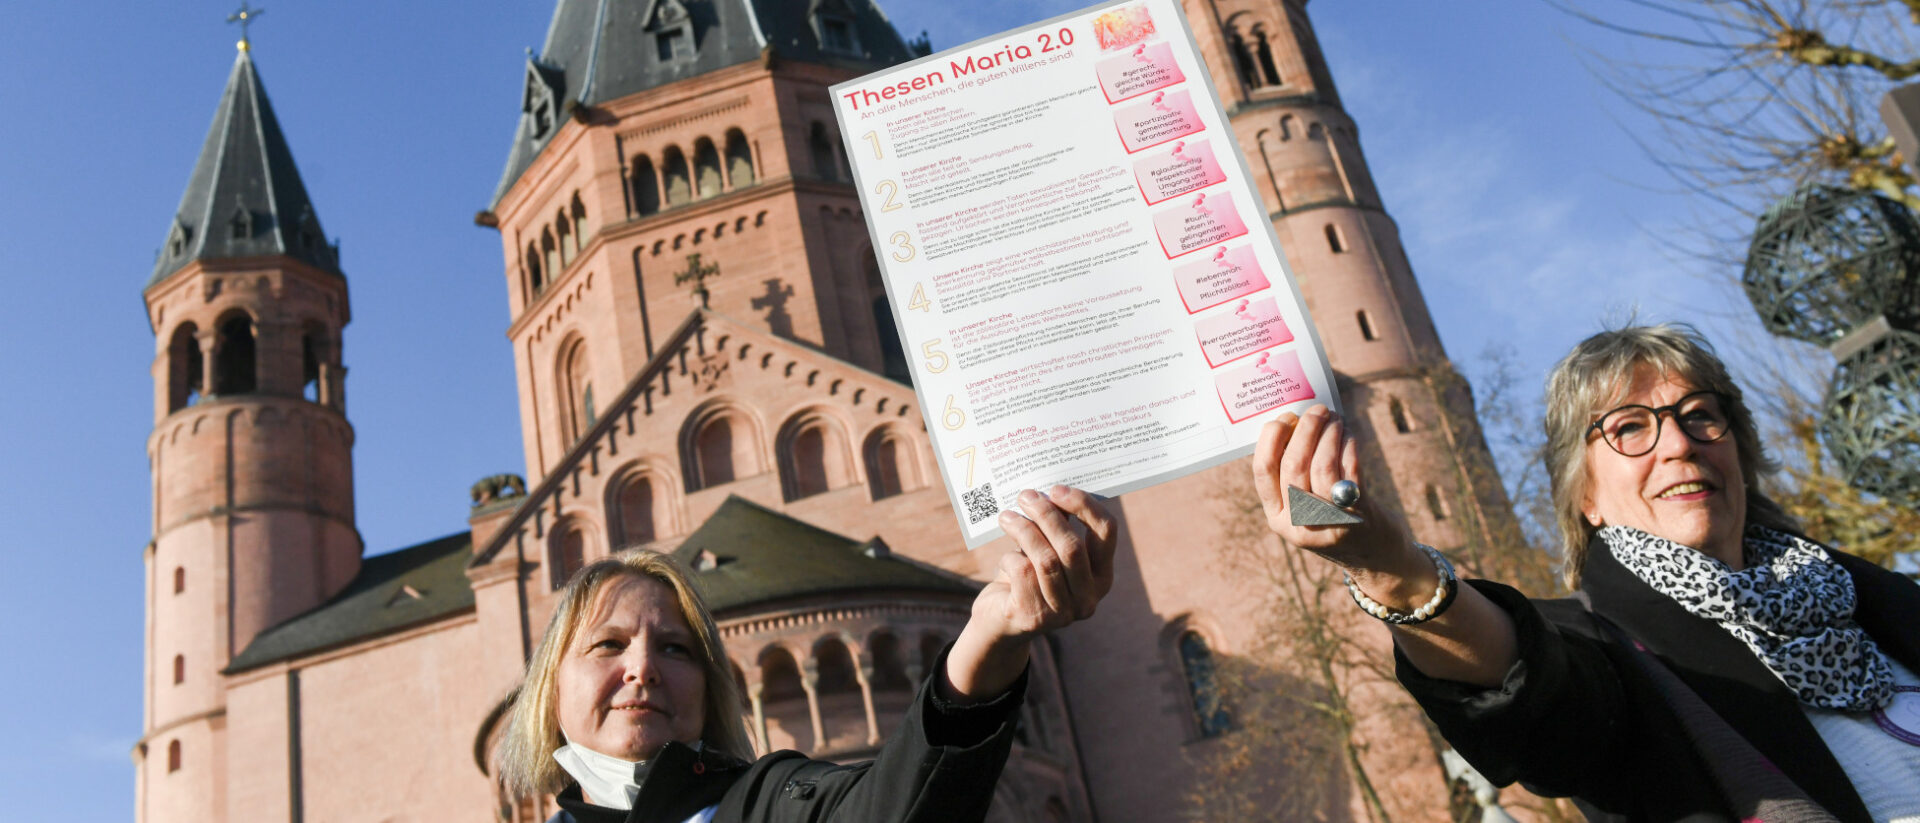 Andrea Keber (l.) und Beate Berdel-Mantz halten die Thesen der Initiative Maria 2.0 empor vor dem Thesenanschlag 2.0 am 21. Februar 2021 vor dem Dom in Mainz.